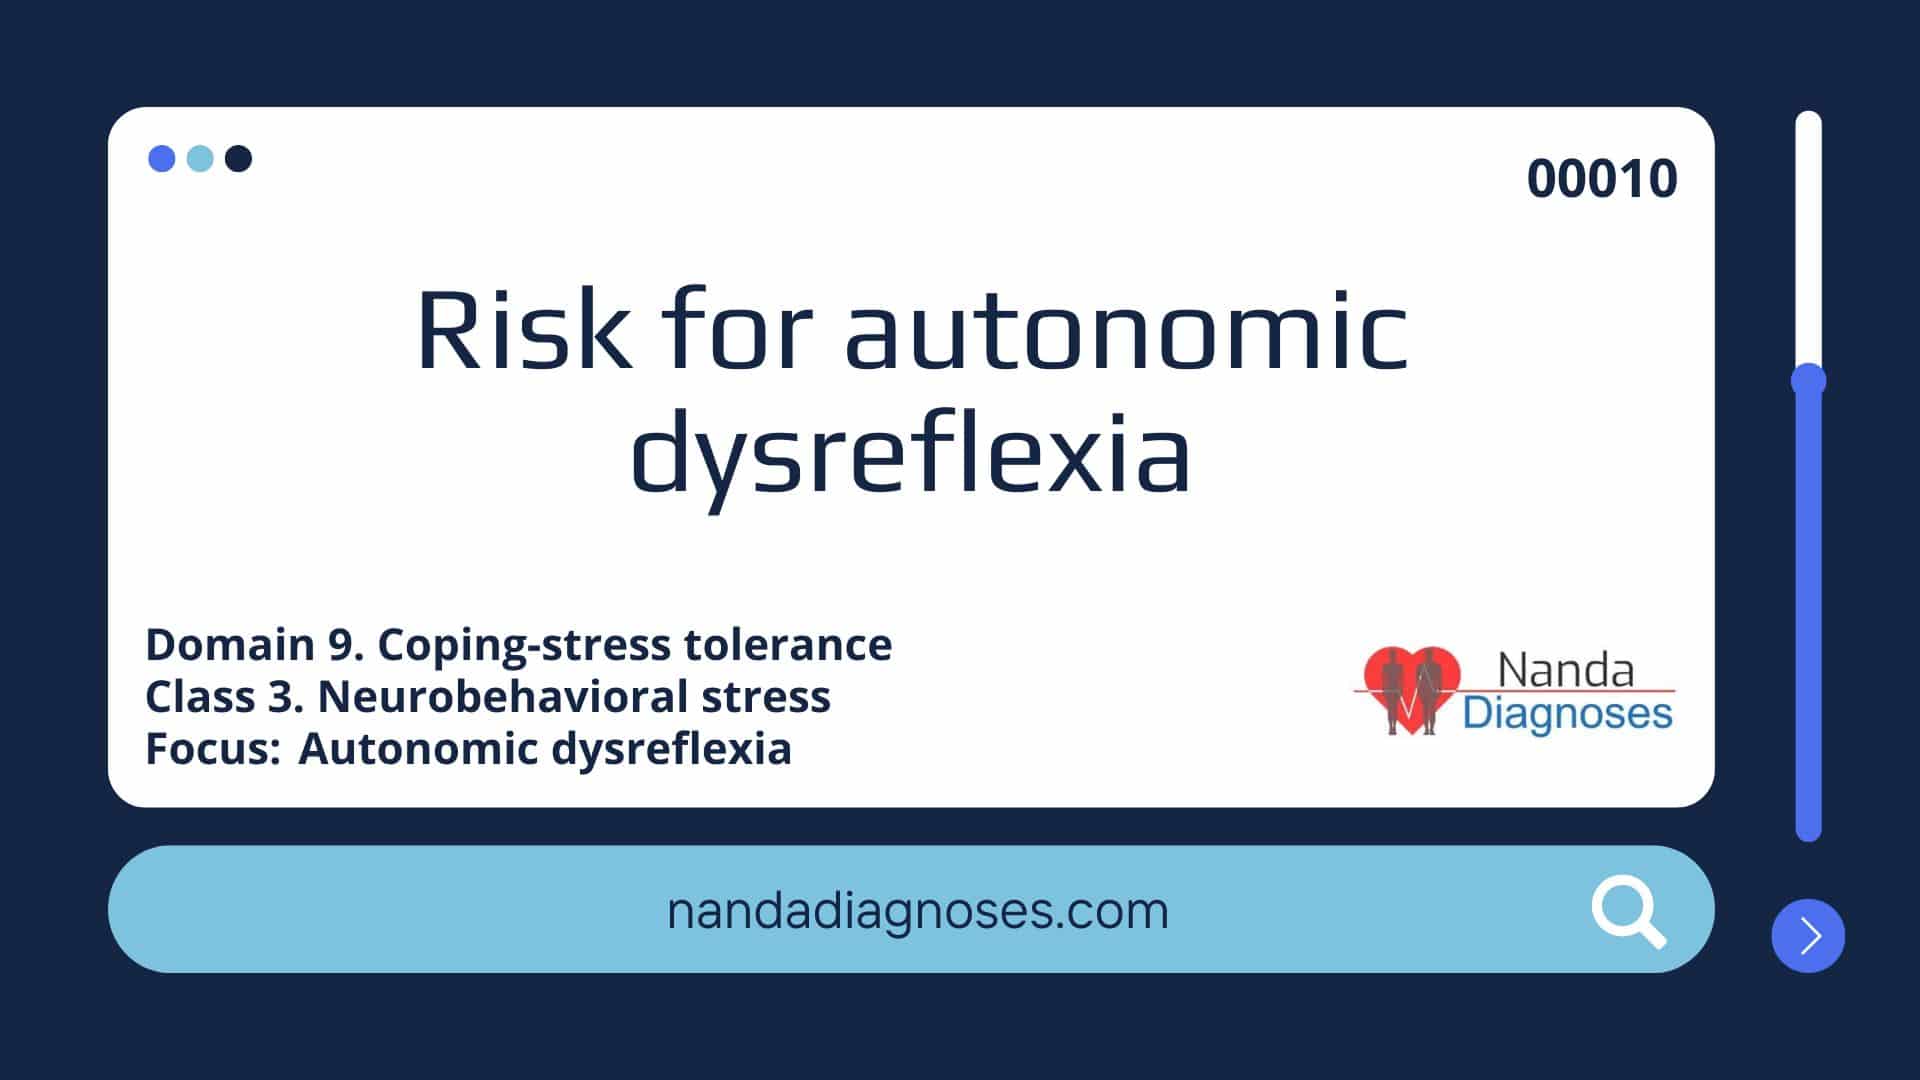 Nursing diagnosis Risk for autonomic